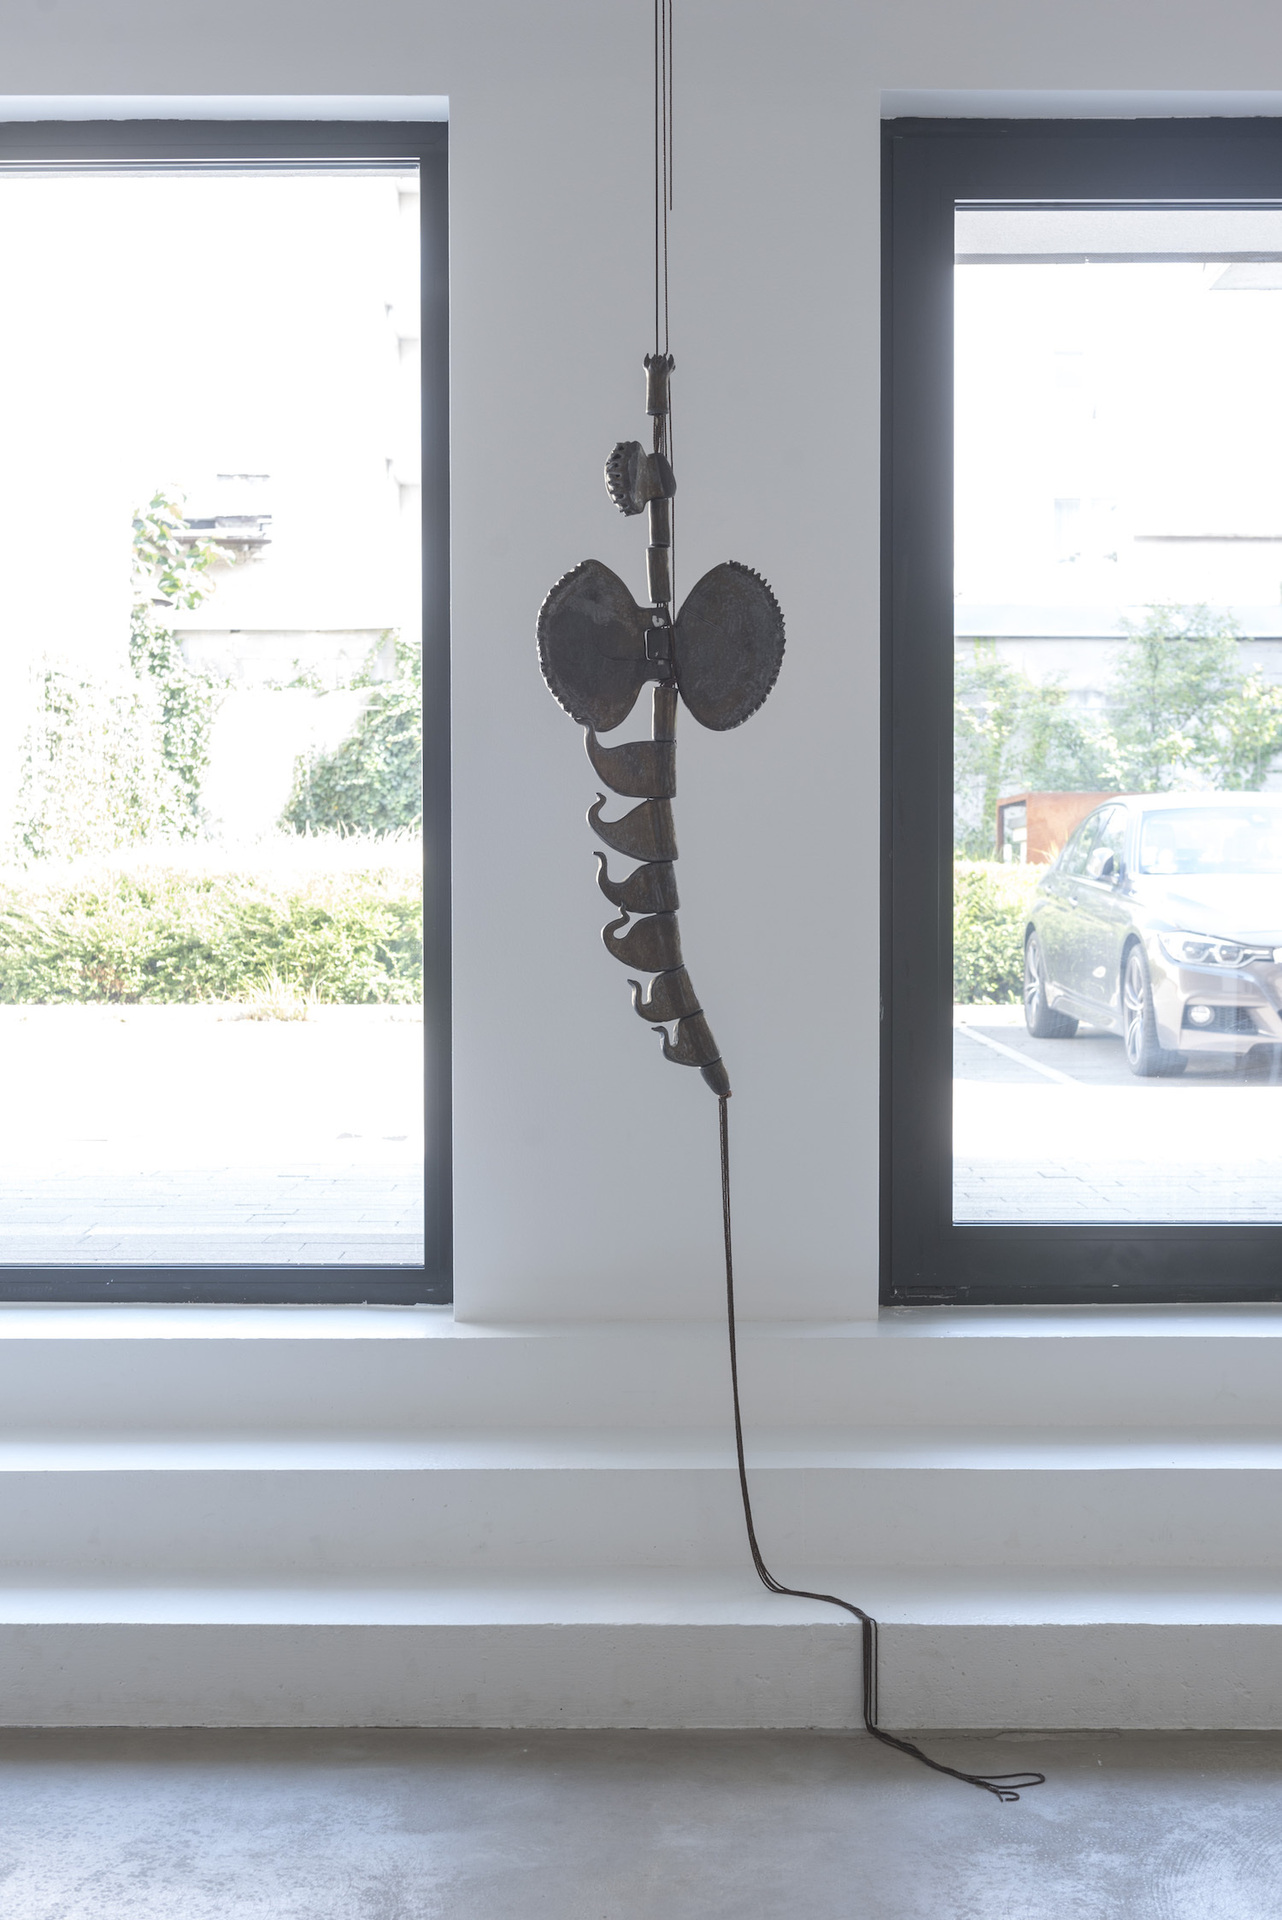 Céline Struger – LIMBIC RESONANCE, 2018, stoneware, chains, 300 x 45 x 35 cm